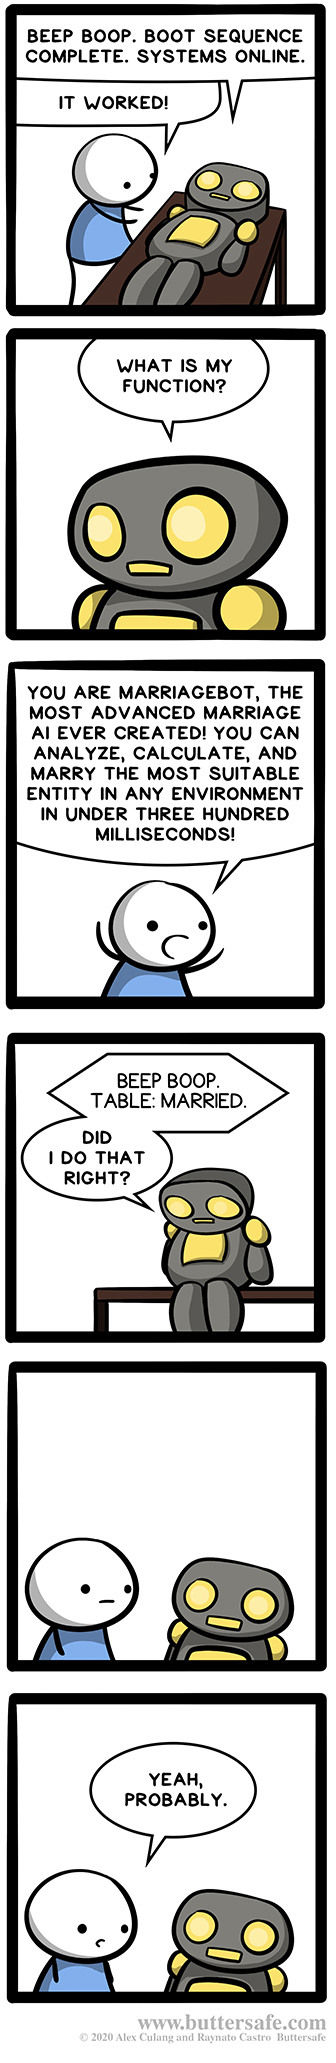 MarriageBot